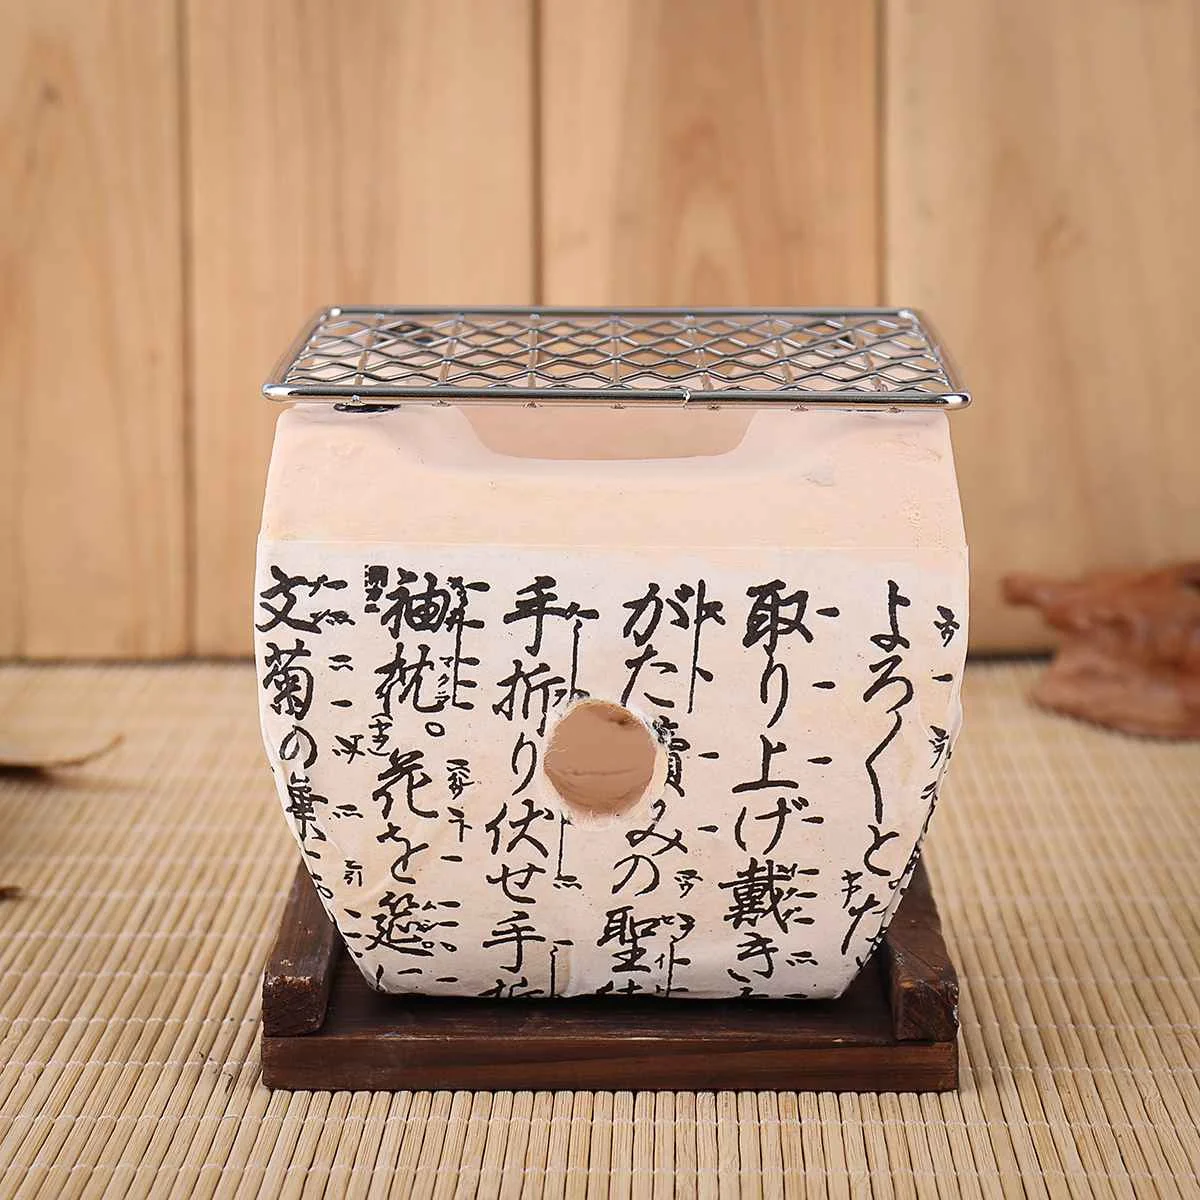 Японский Корейский Стильный гриль для барбекю угольная плита Konro керамика Hibachi Yakitori Кемпинг барбекю принадлежности для барбекю инструменты 2 размера